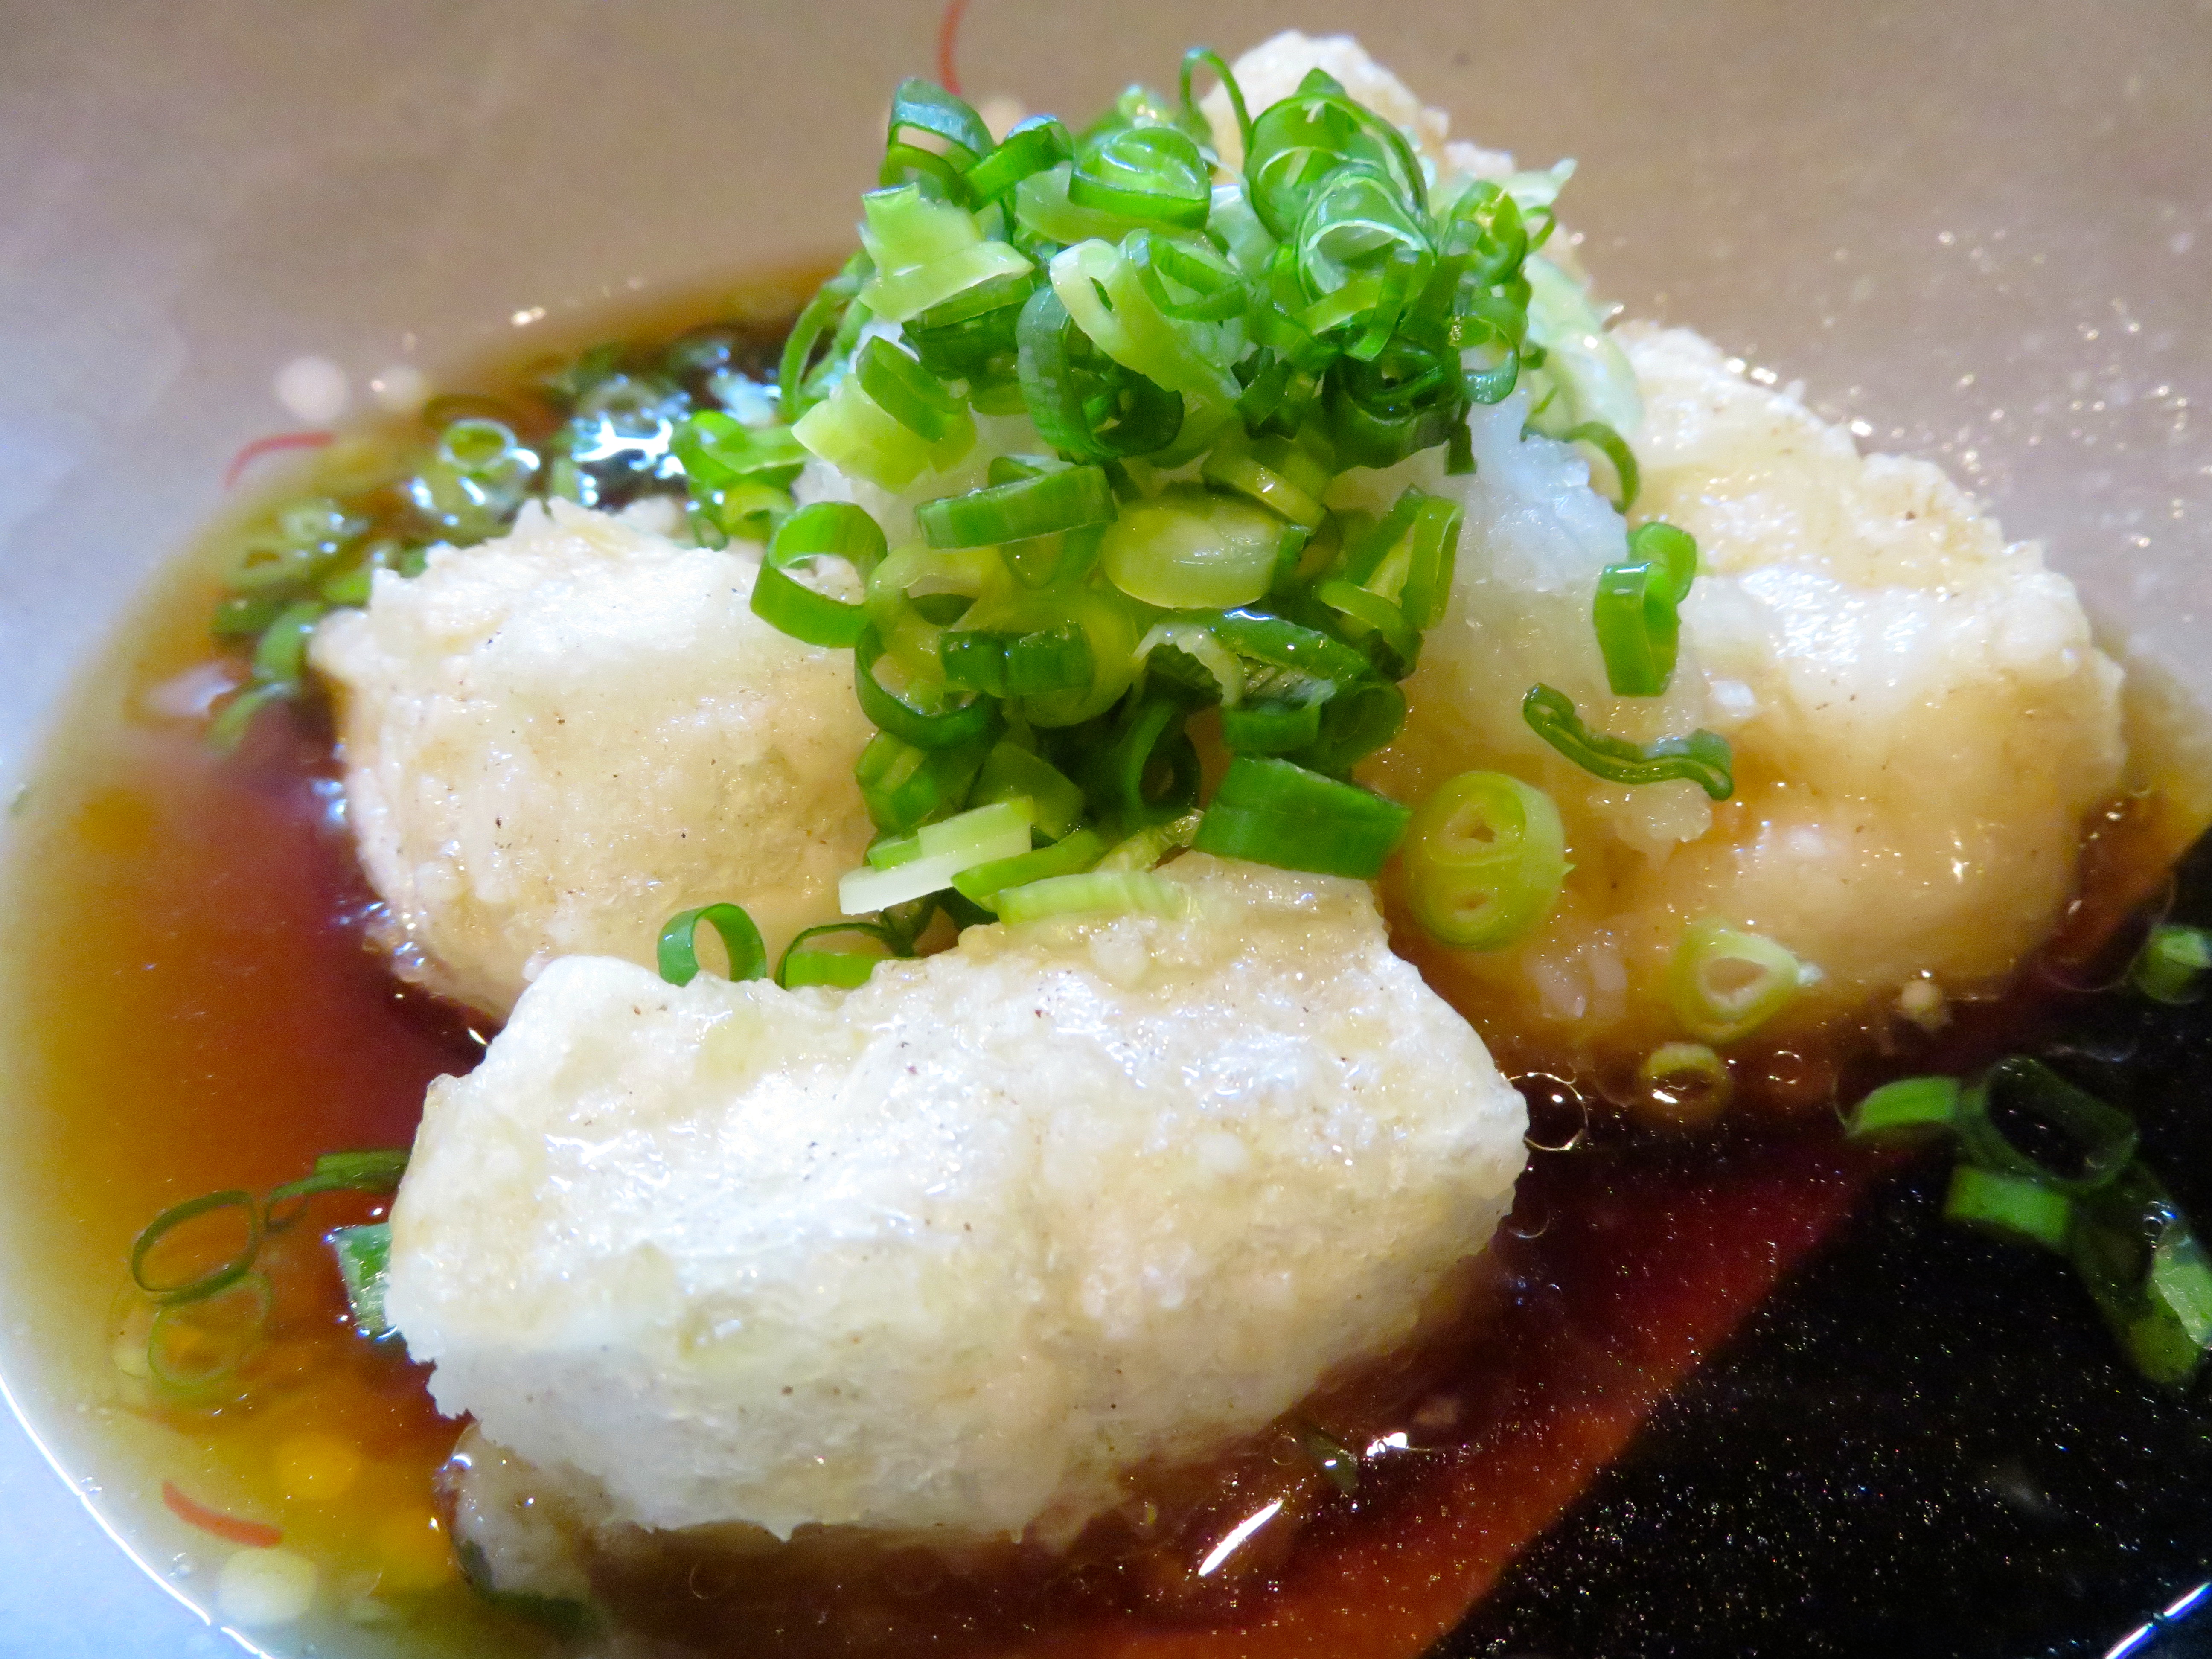 12 Best Vegetarian Restaurants in Tokyo